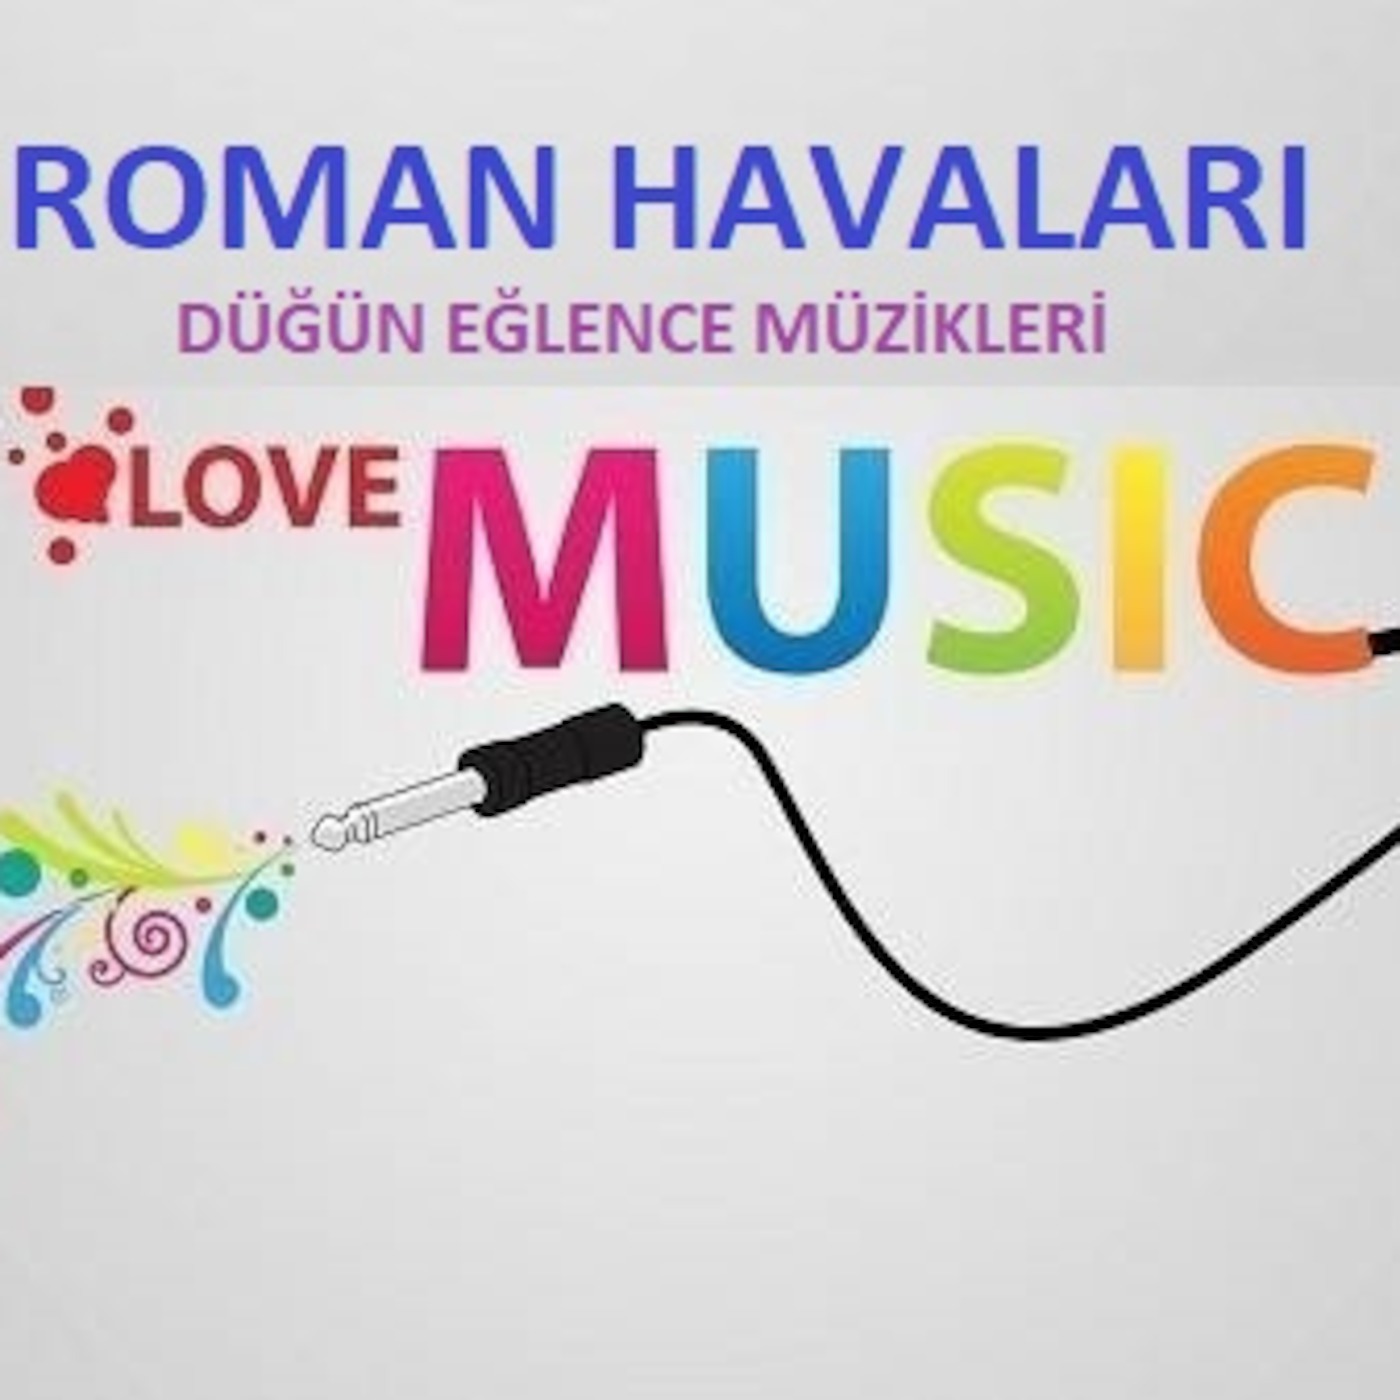 Roman Havaları Göbek atmalık şarkılar - 2019 Roman müzikler